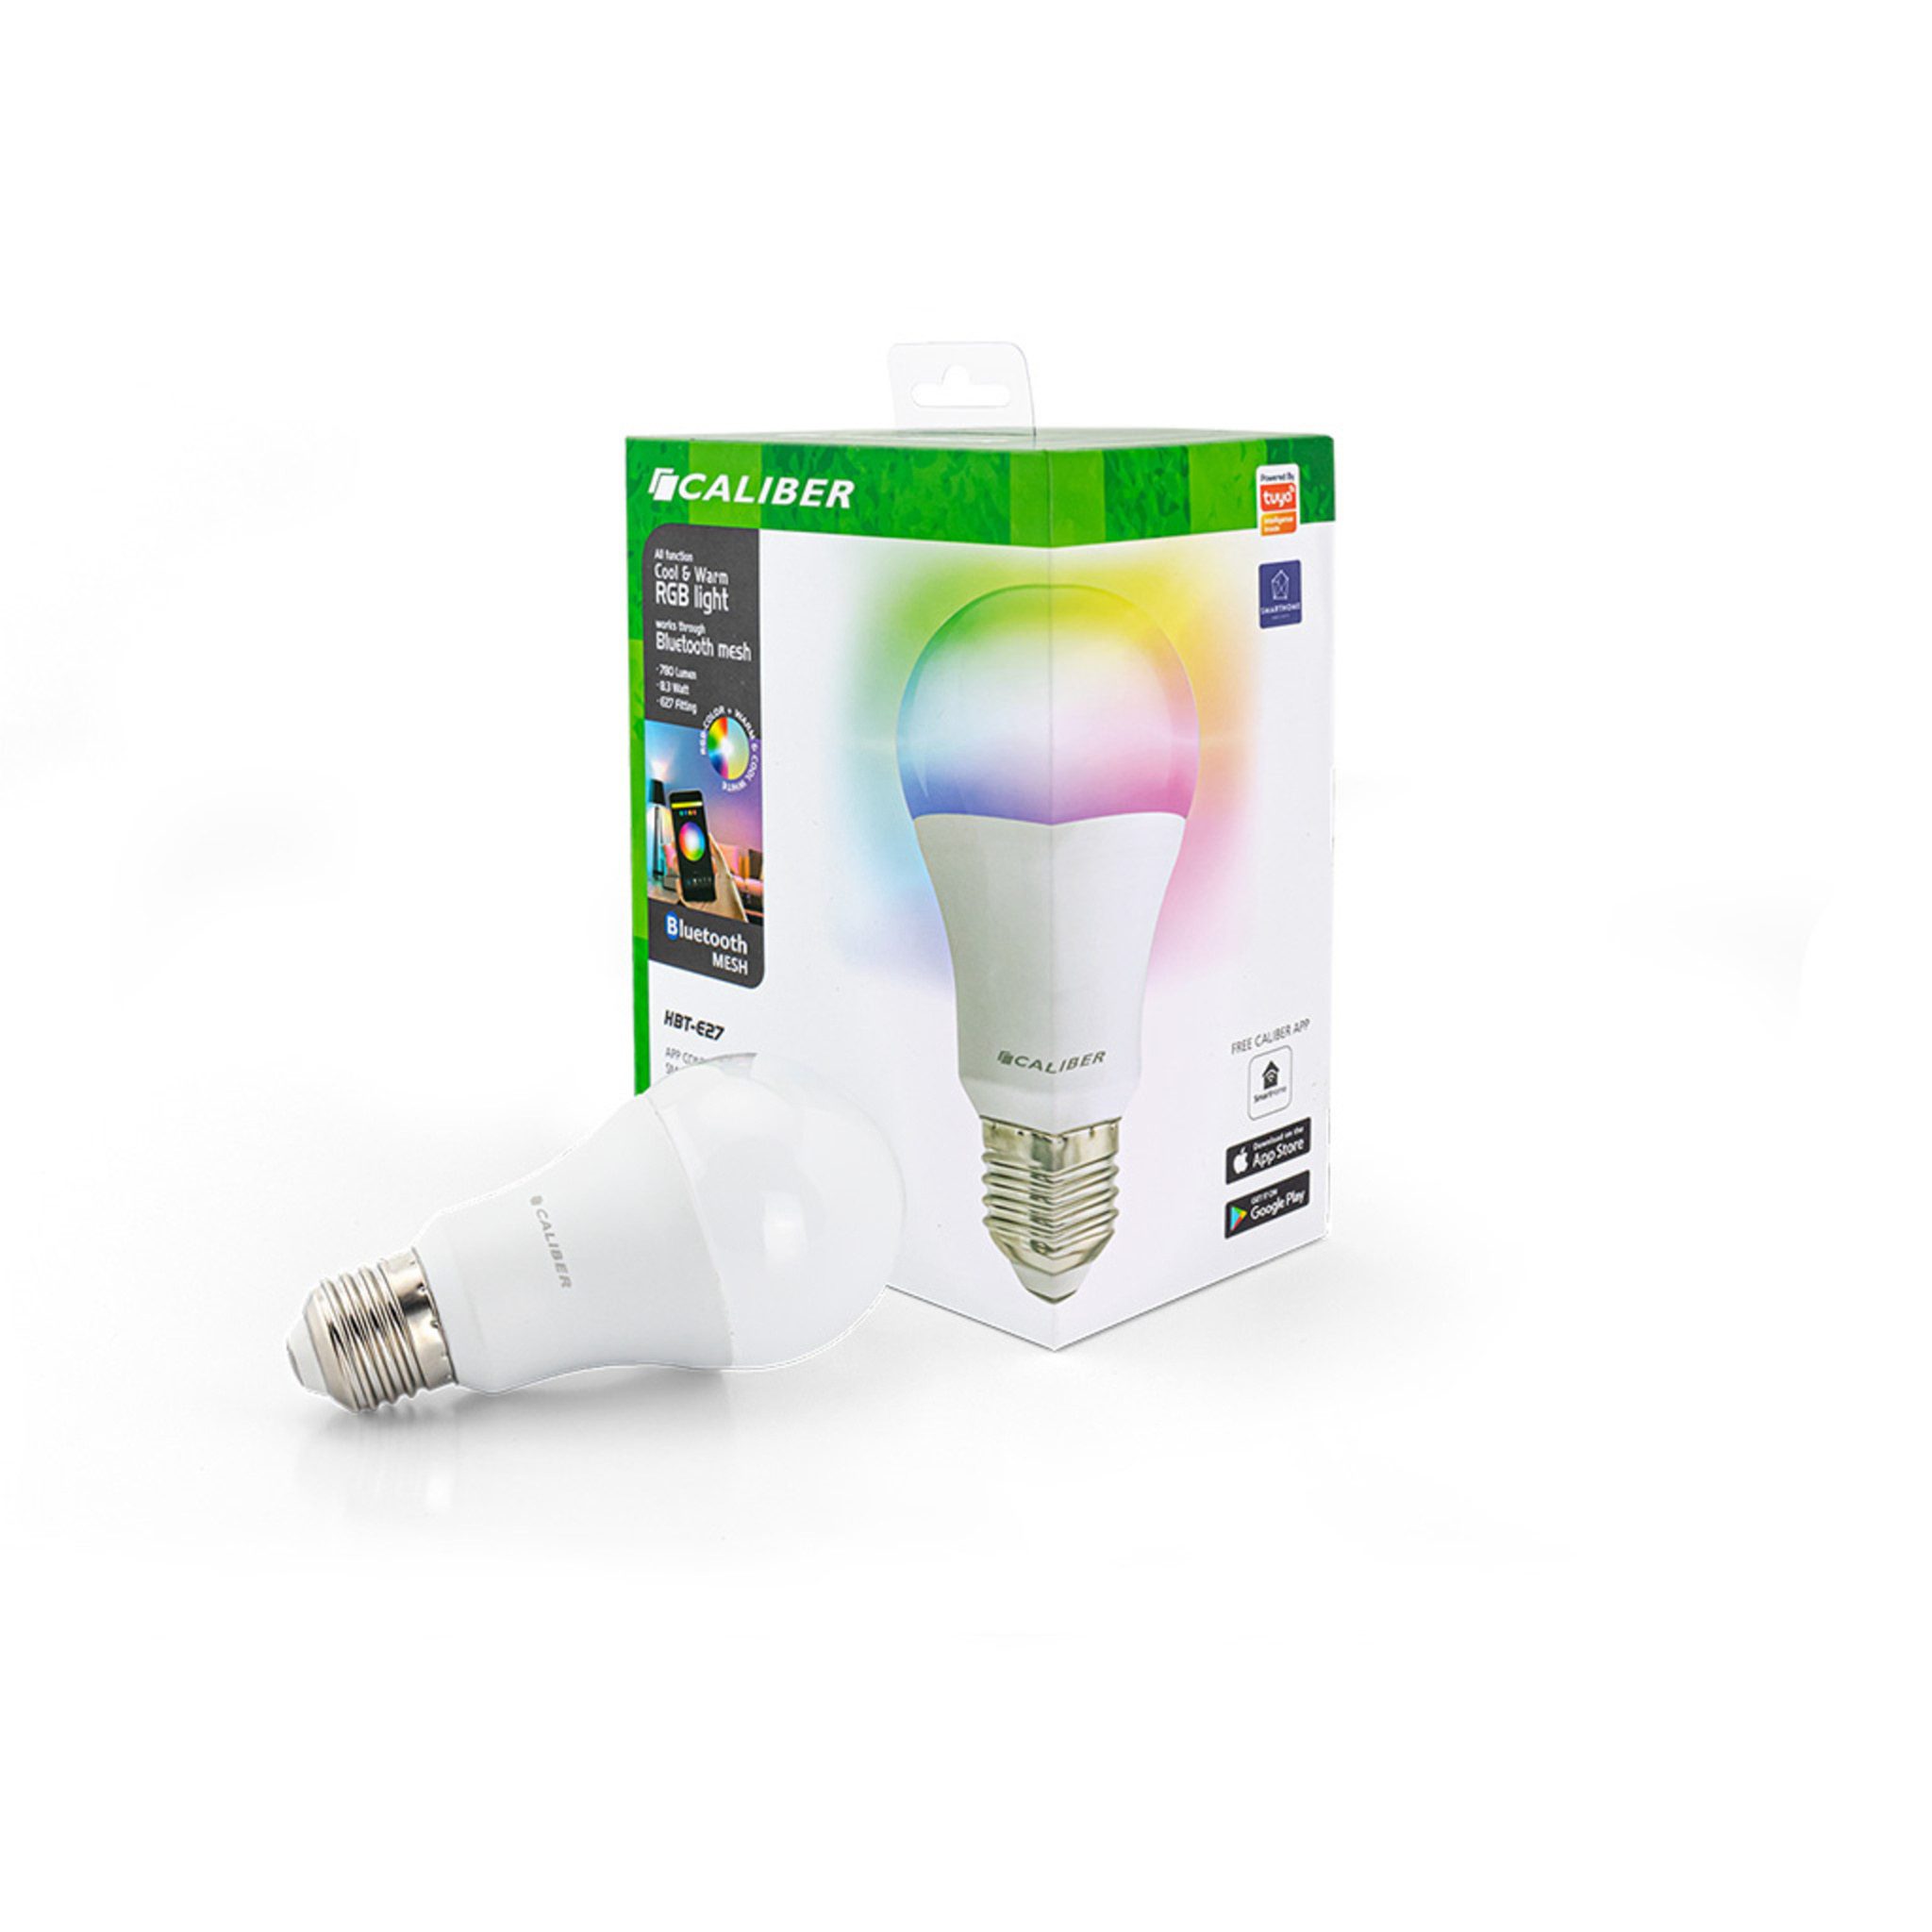 Caliber Smarte LED-Leuchte Caliber Wifi LED E27 RGB + Warm White + Cool White